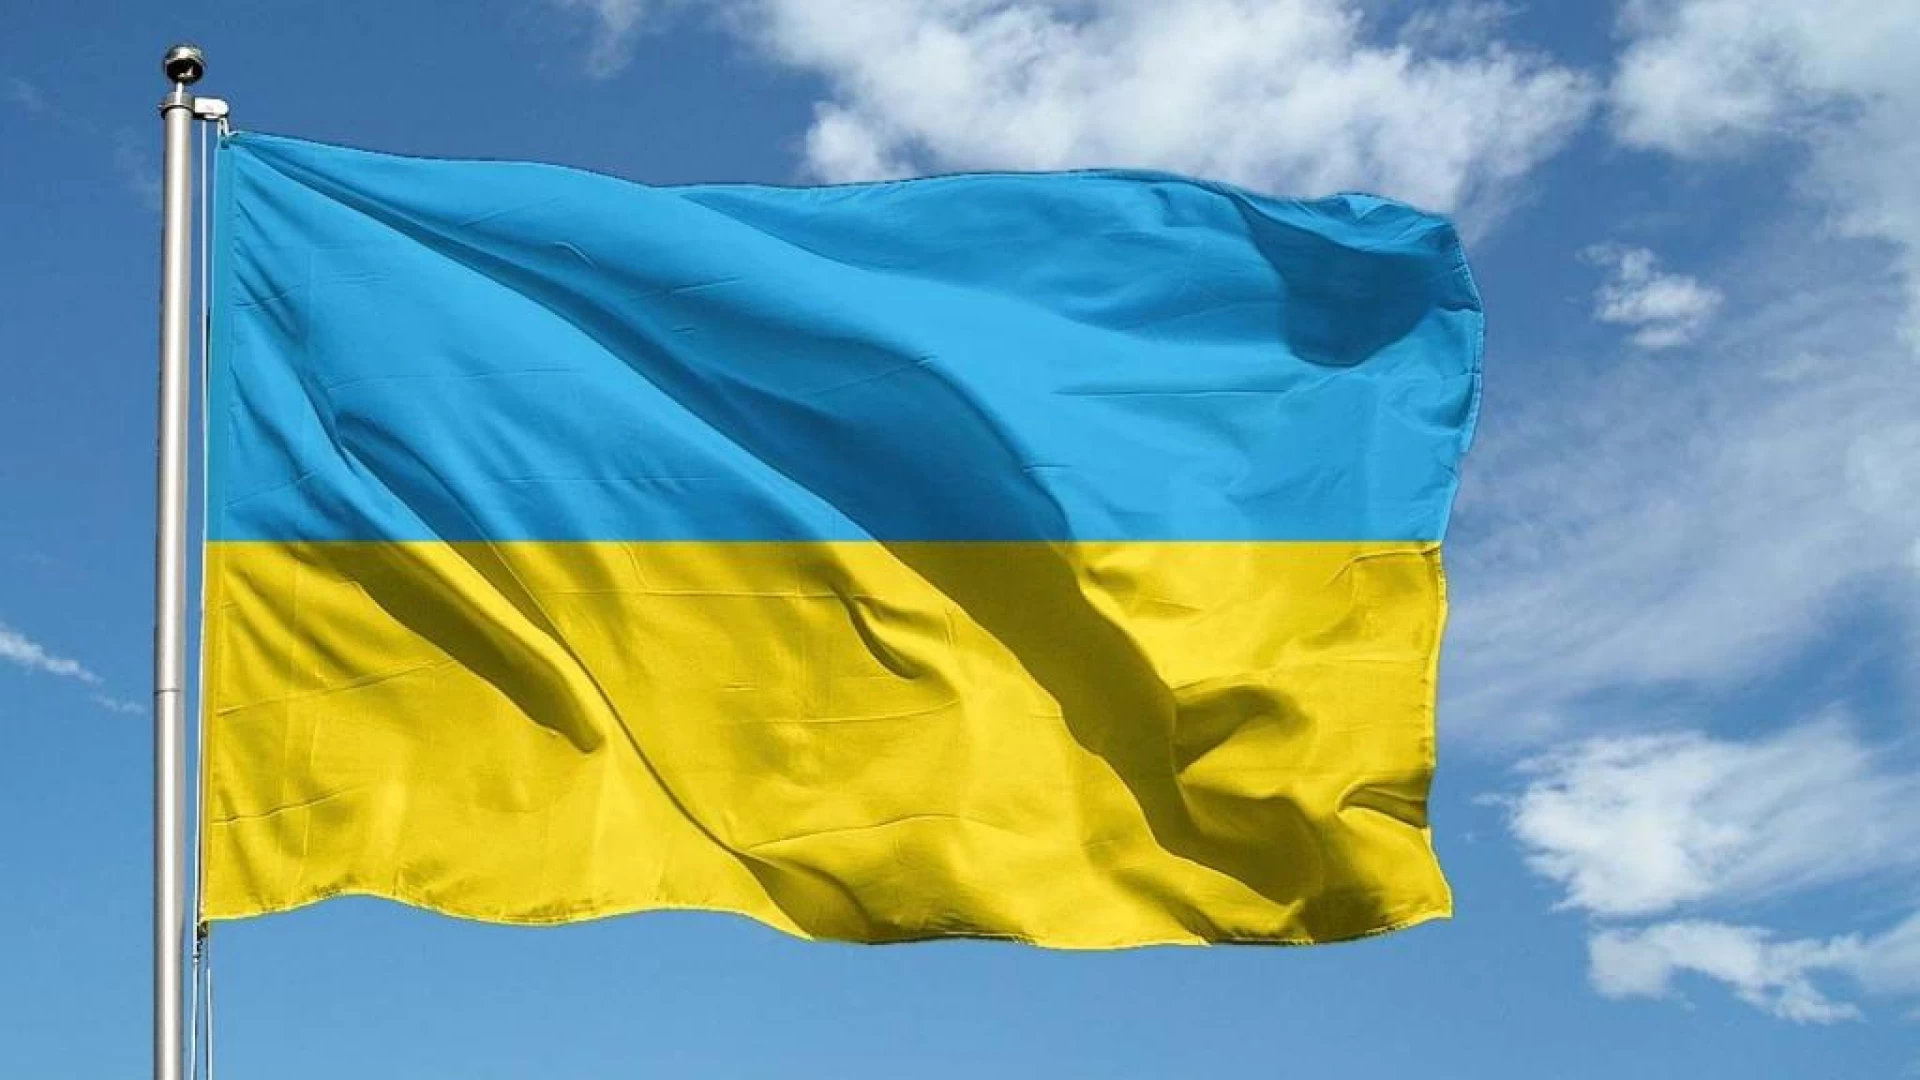 L’Associazione Stop Bullismo Odv avvia una raccolta fondi a sostegno dell’emergenza Ucraina con fondi destinati ad Unicef.